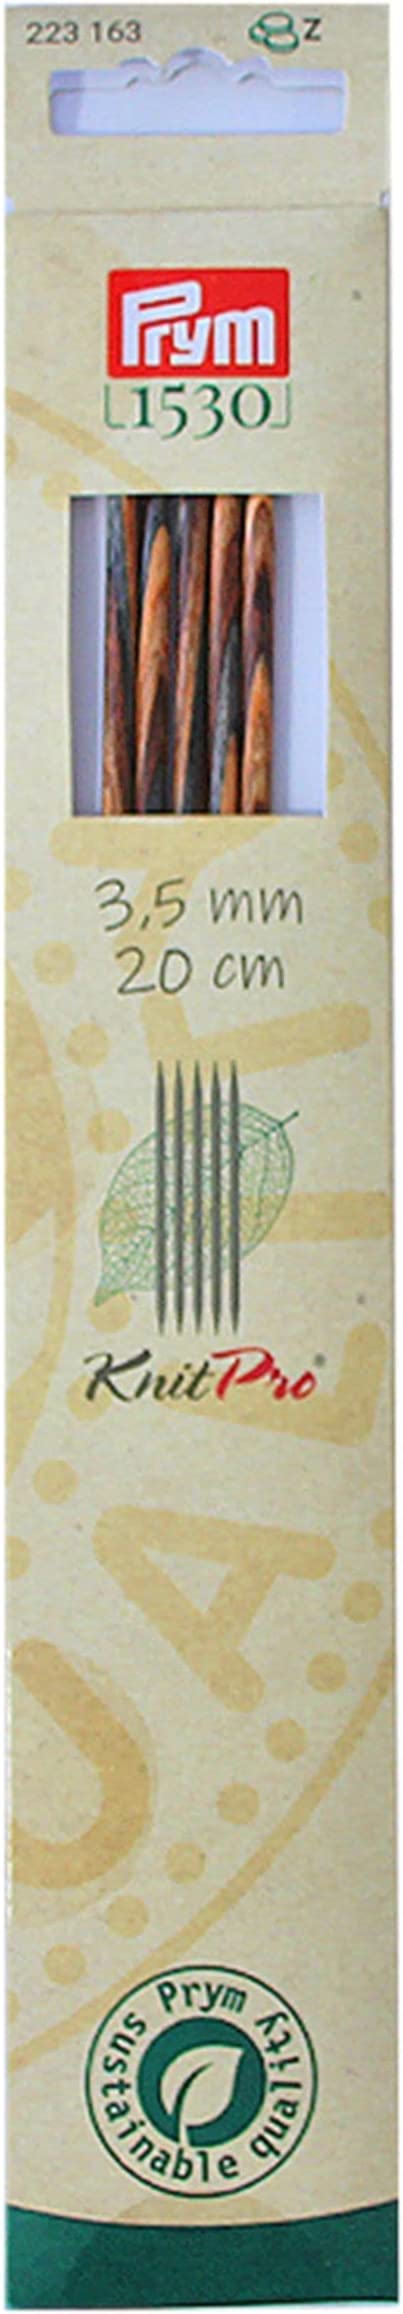 Knit Pro Strumpfstricknadeln, Natural, 20cm, 3,50mm Prym 223163